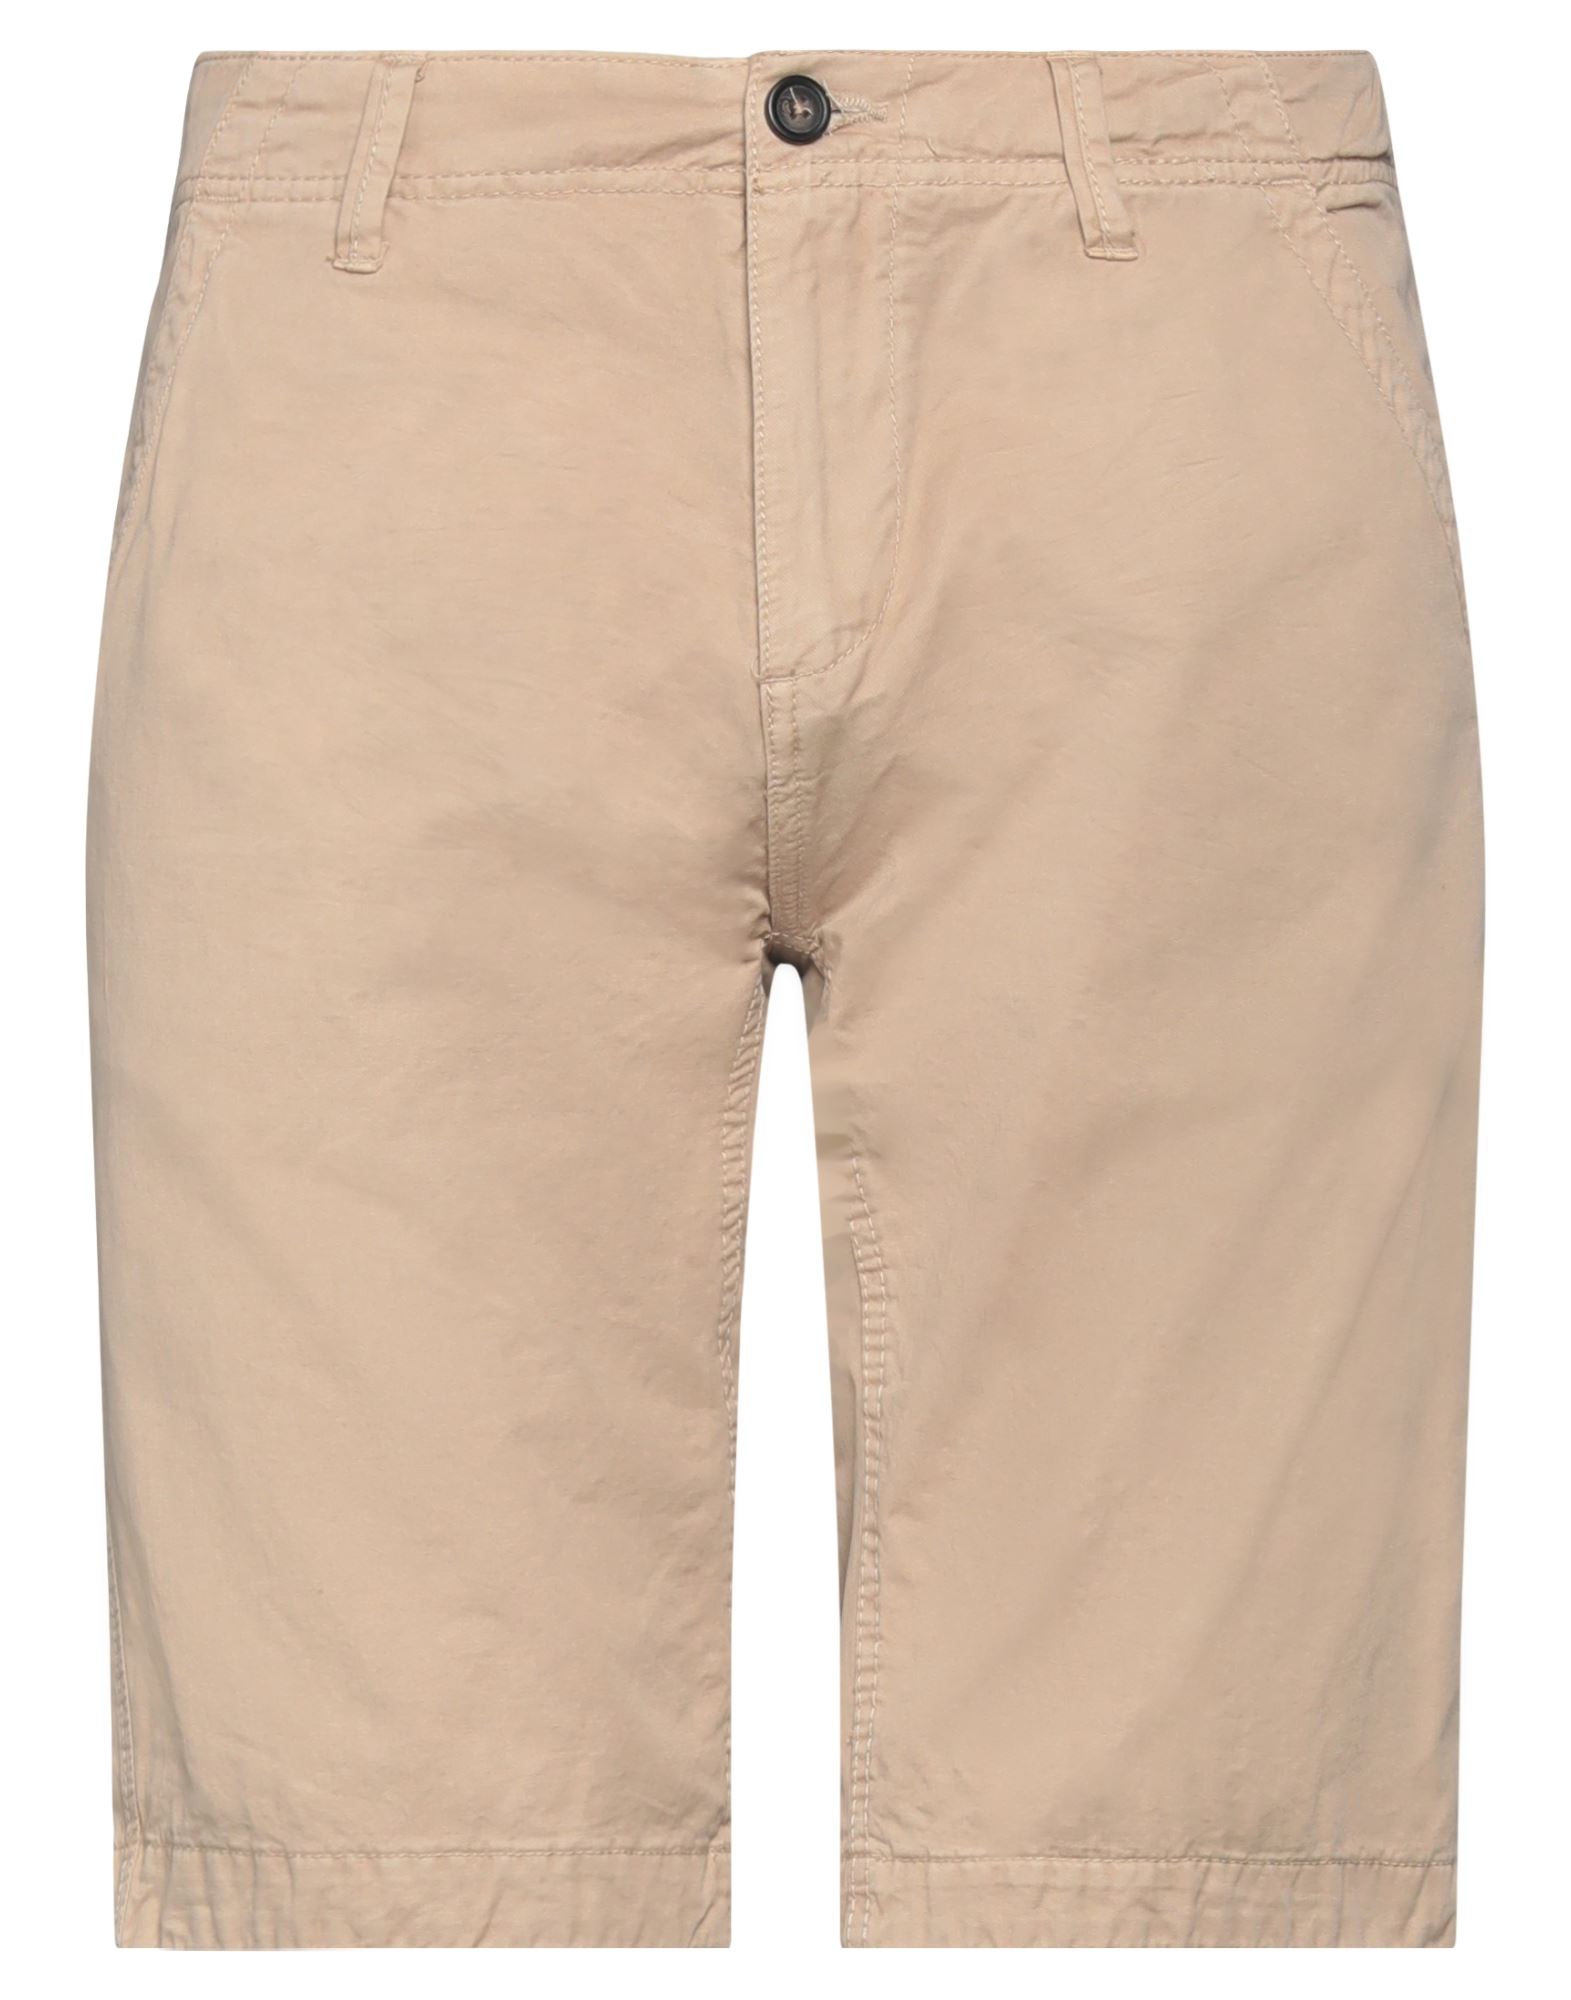 A.f.f Associazione Fabbri Fiorentini A. F.f Associazione Fabbri Fiorentini Man Shorts & Bermuda Shorts Beige Size 36 Cotton